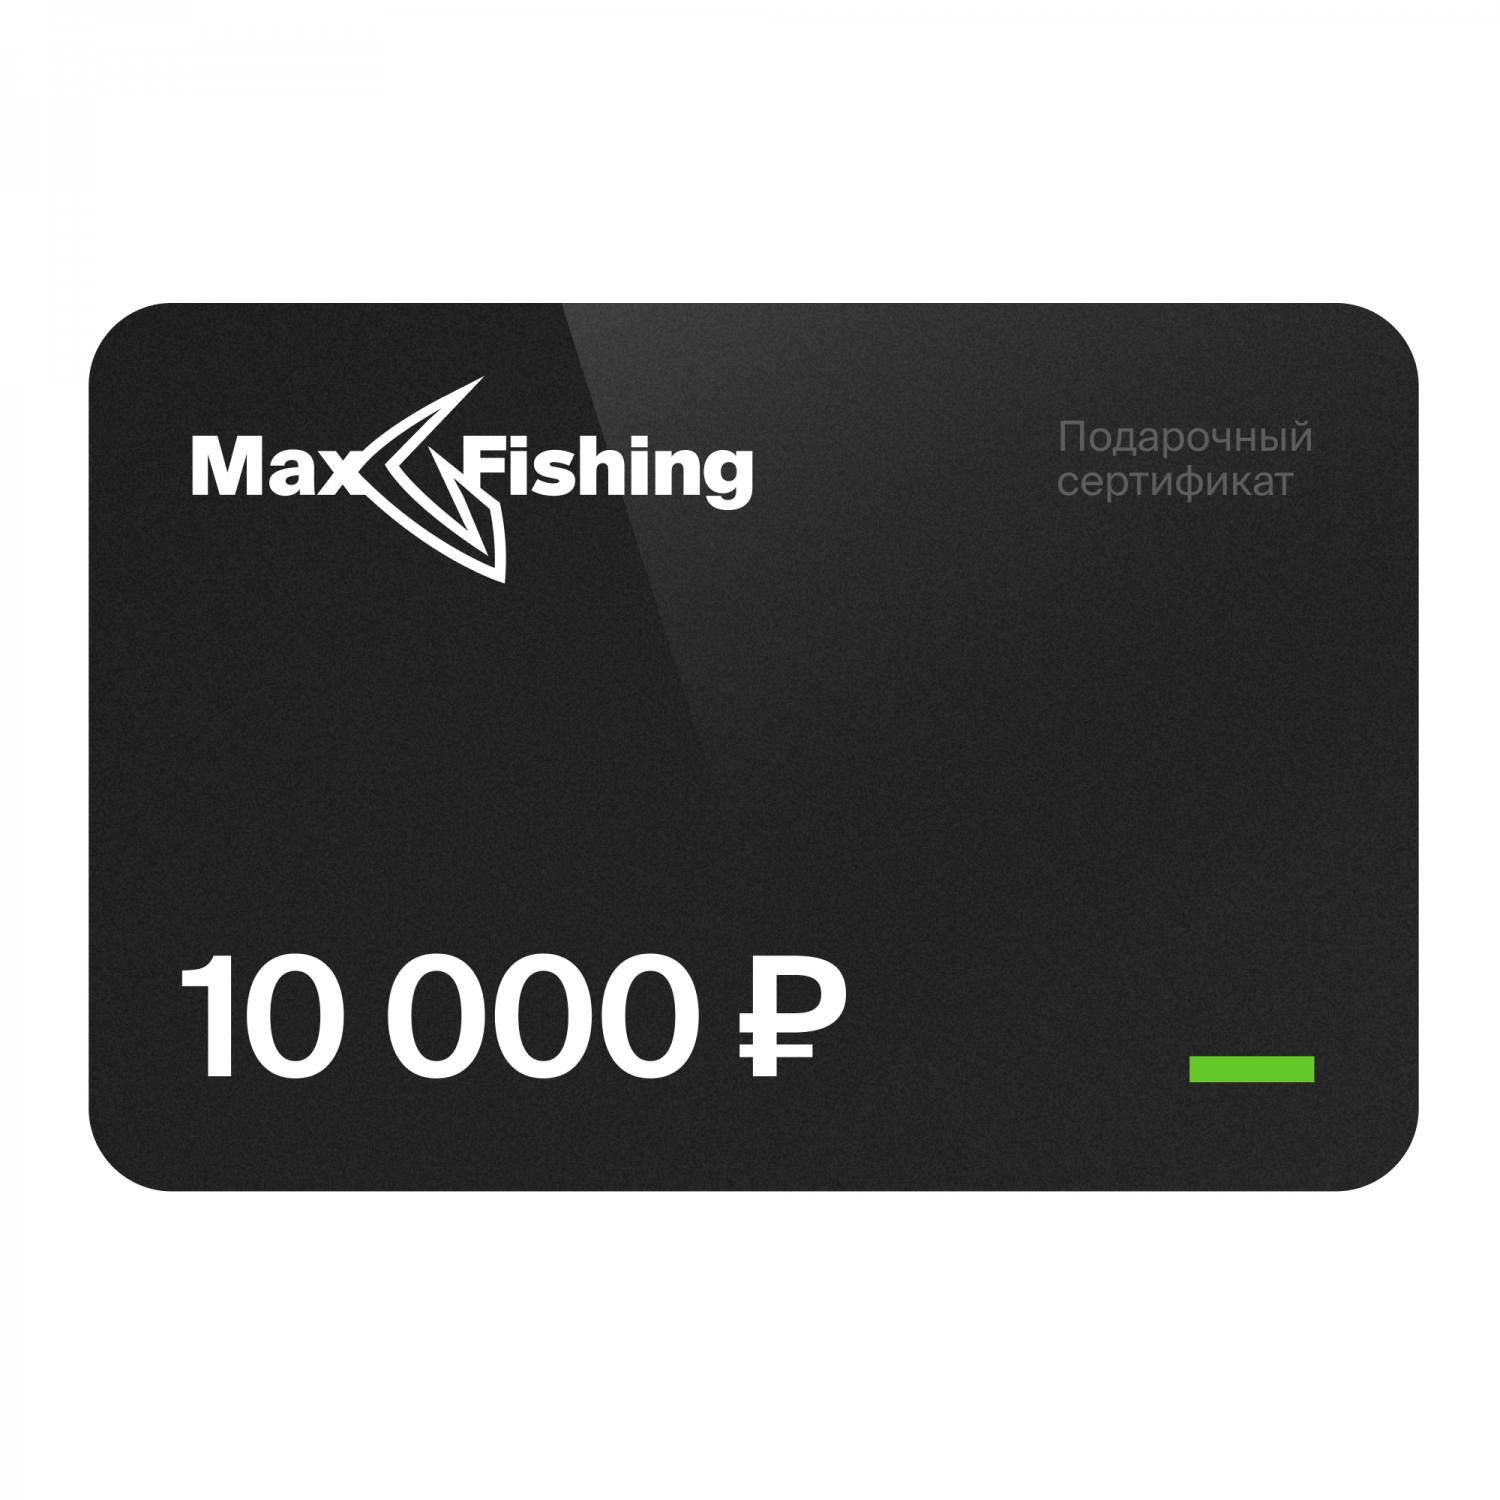 Подарочный сертификат MaxFishing 10 000 ₽ подарочный сертификат на 40 000 рублей